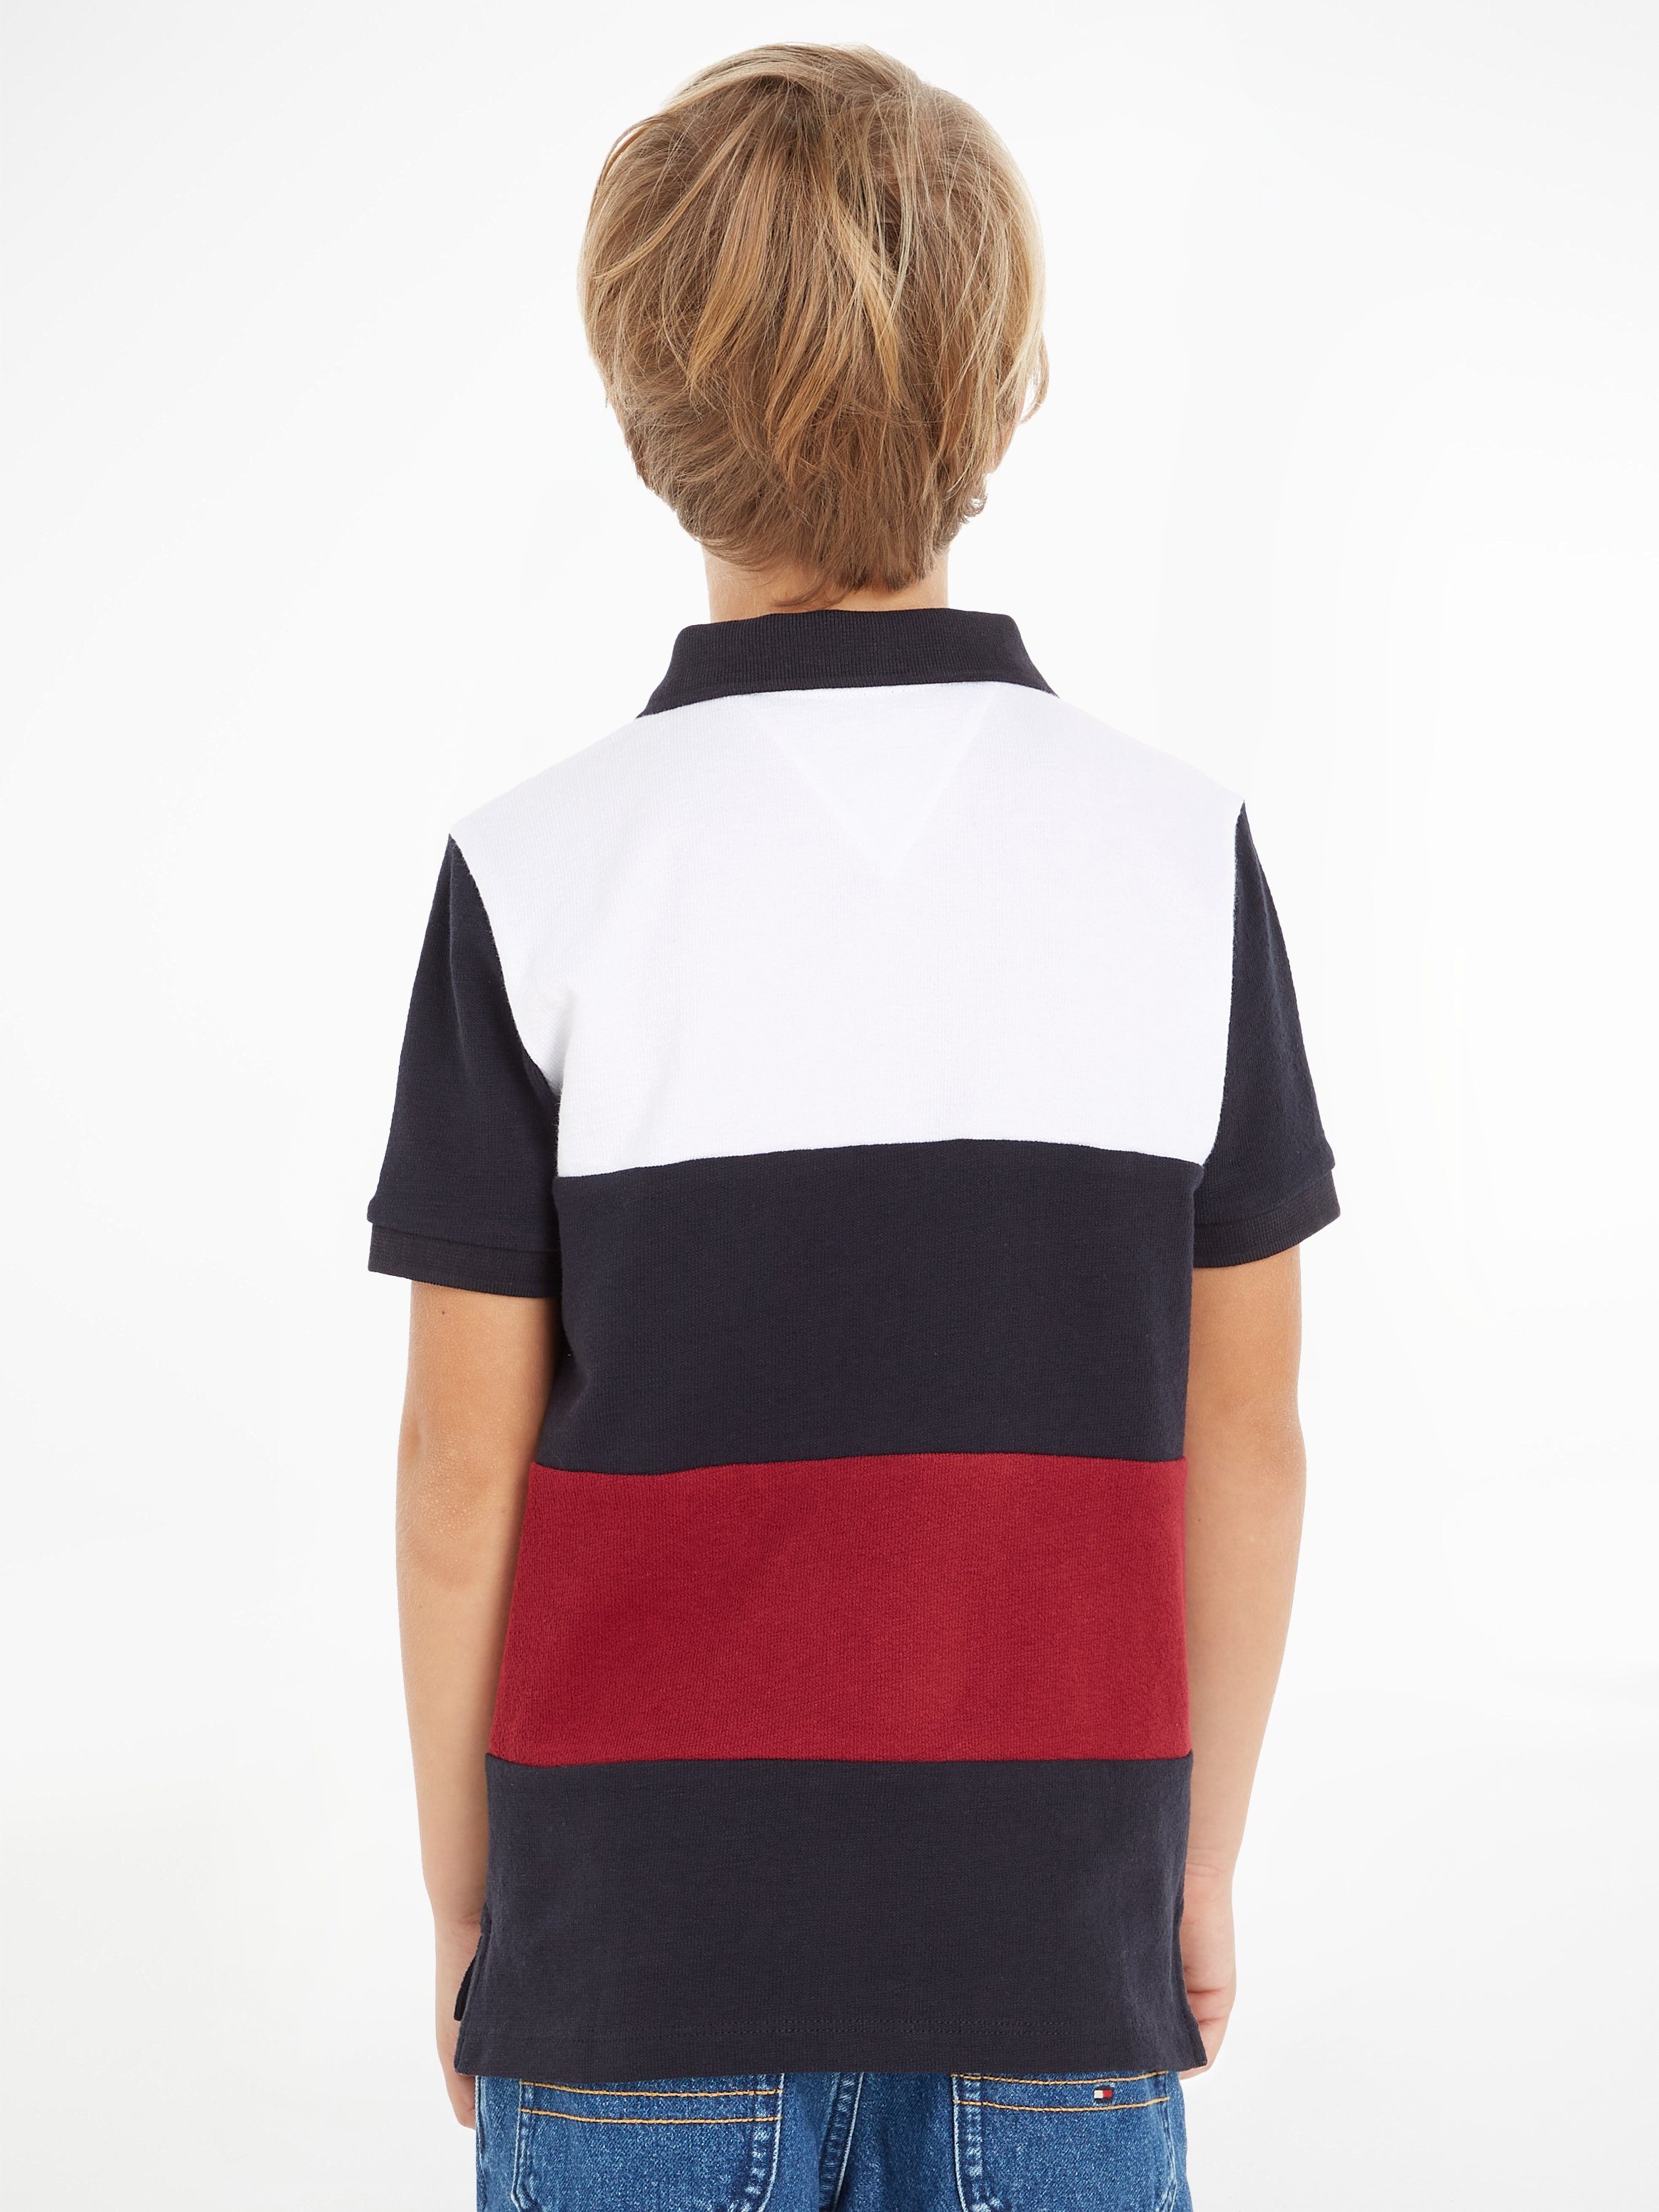 STRIPE in Farben CLRBLOCK Hilfiger Streifen den POLO S/S mit typischen Poloshirt Hilfiger GLOBAL Tommy